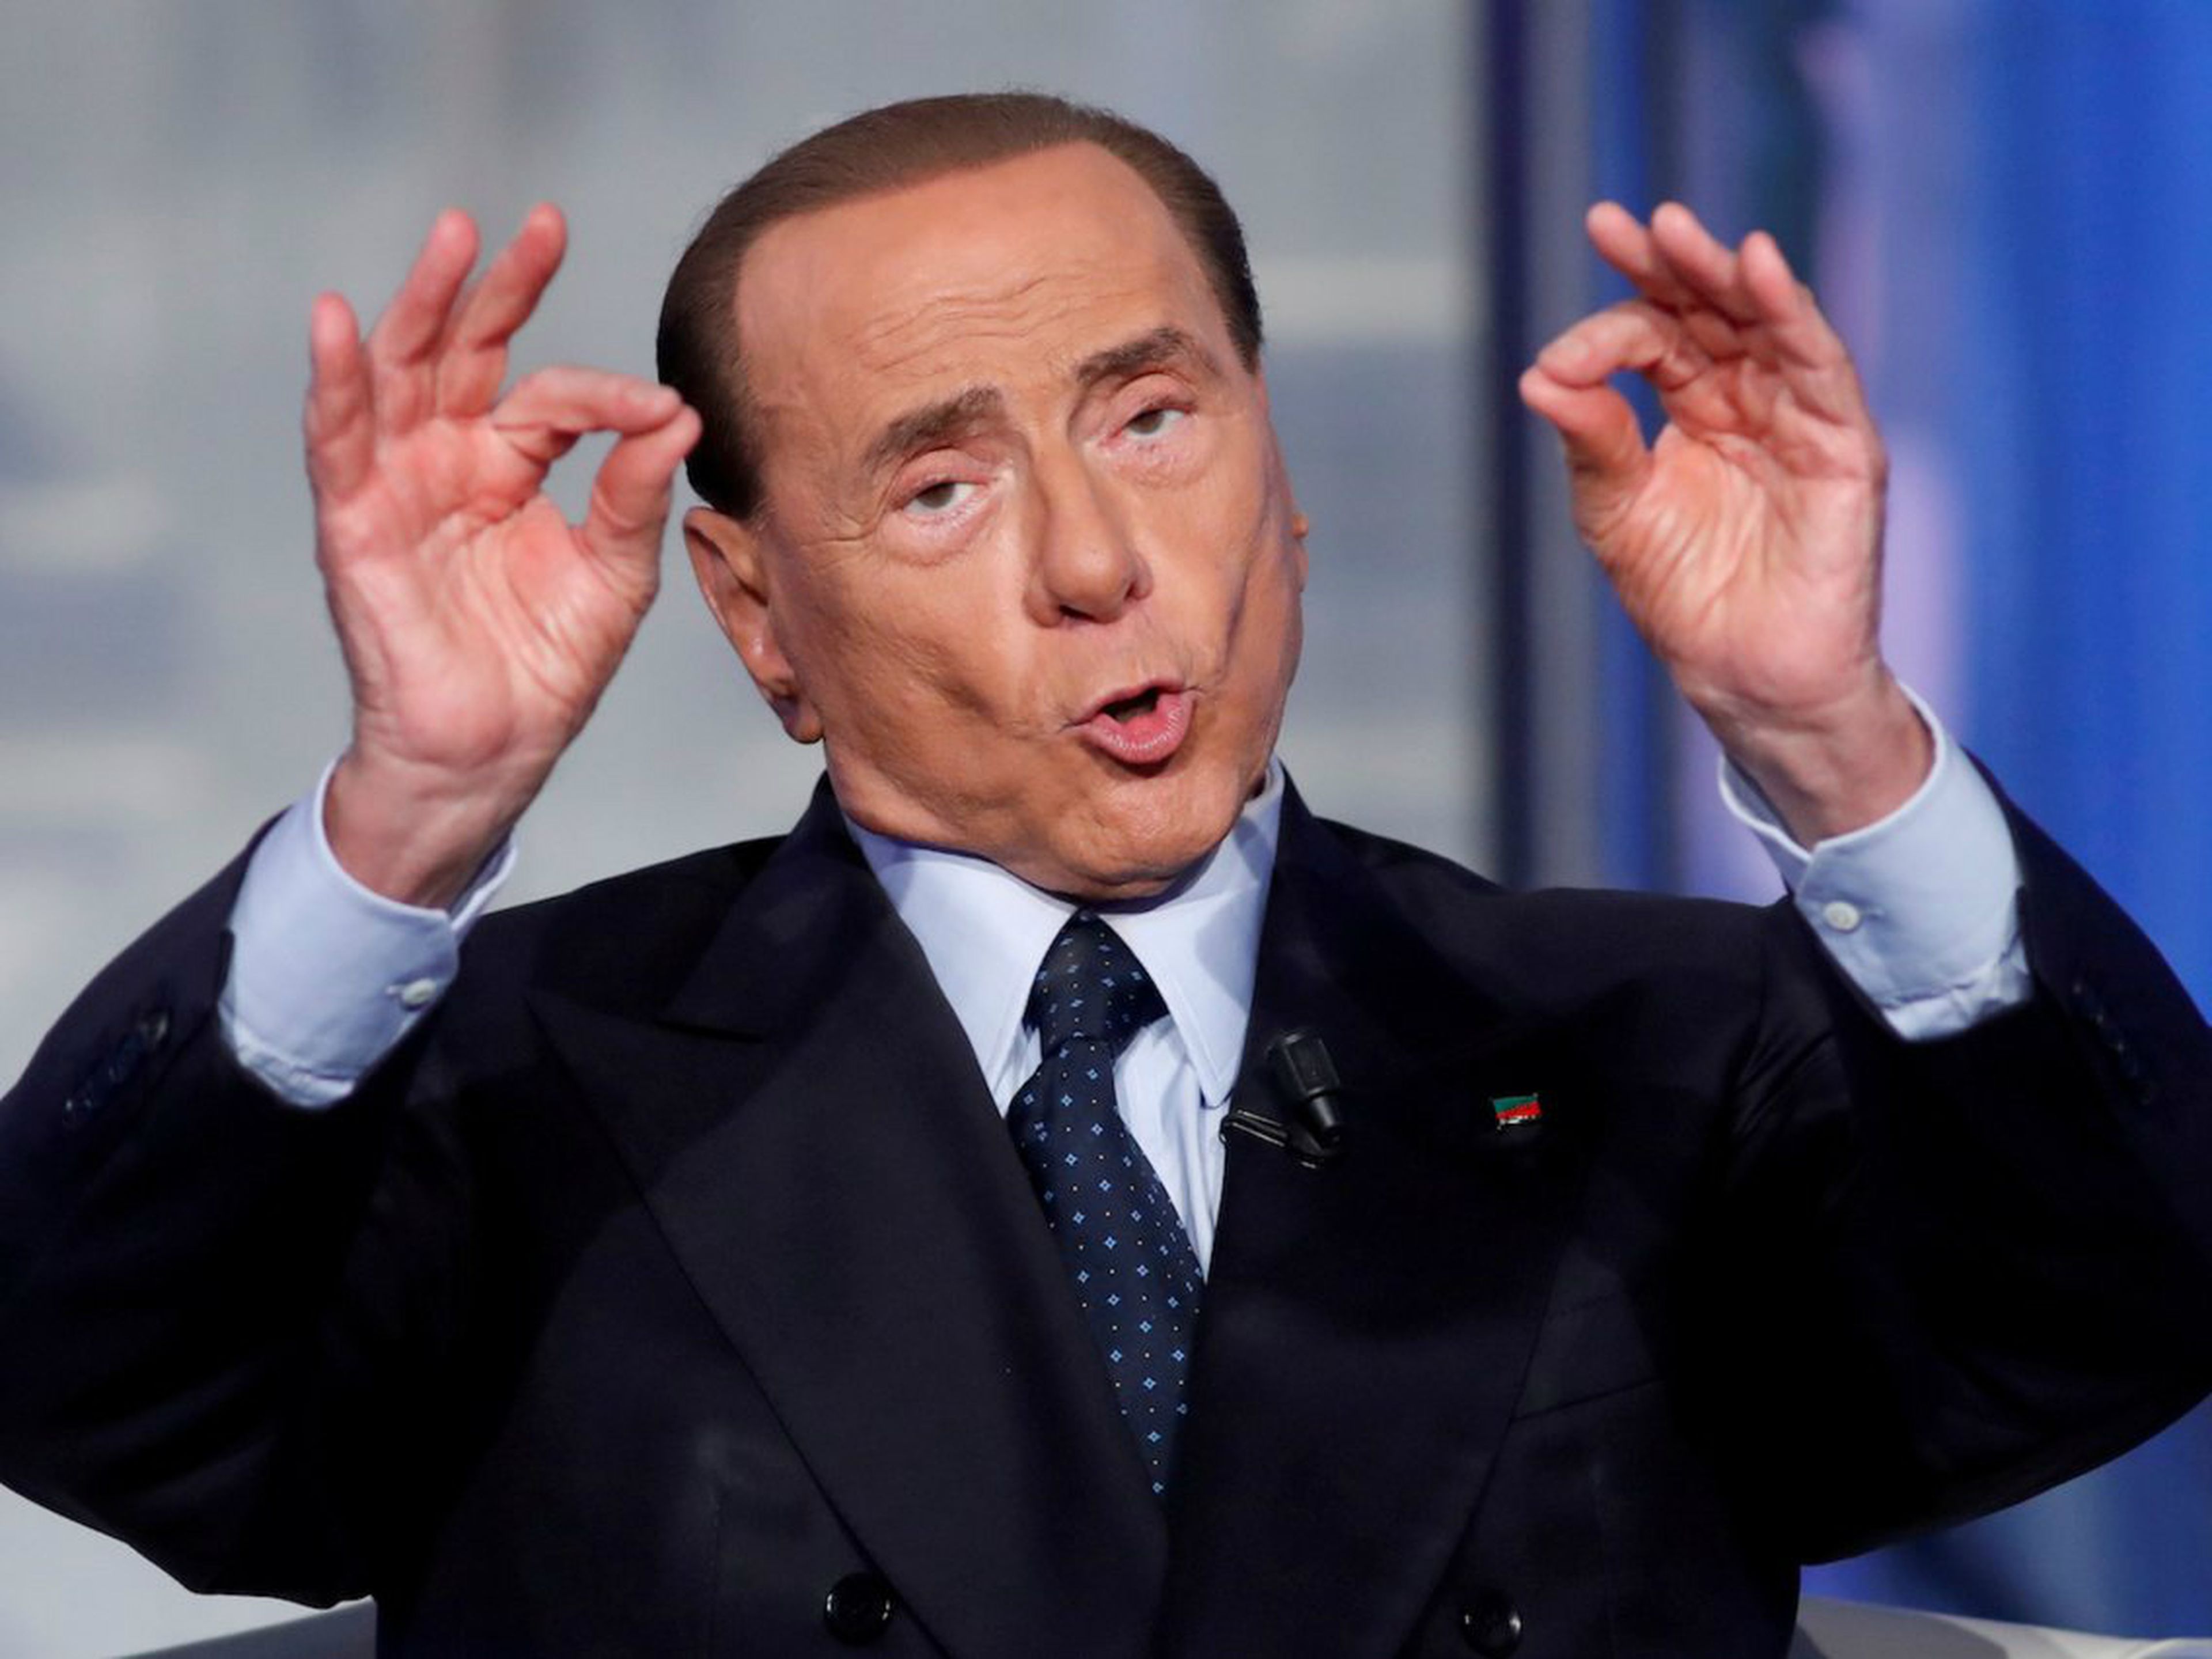 El ex primer ministro italiano, Silvio Berlusconi, fue condenado a prisión por fraude fiscal en 2013.